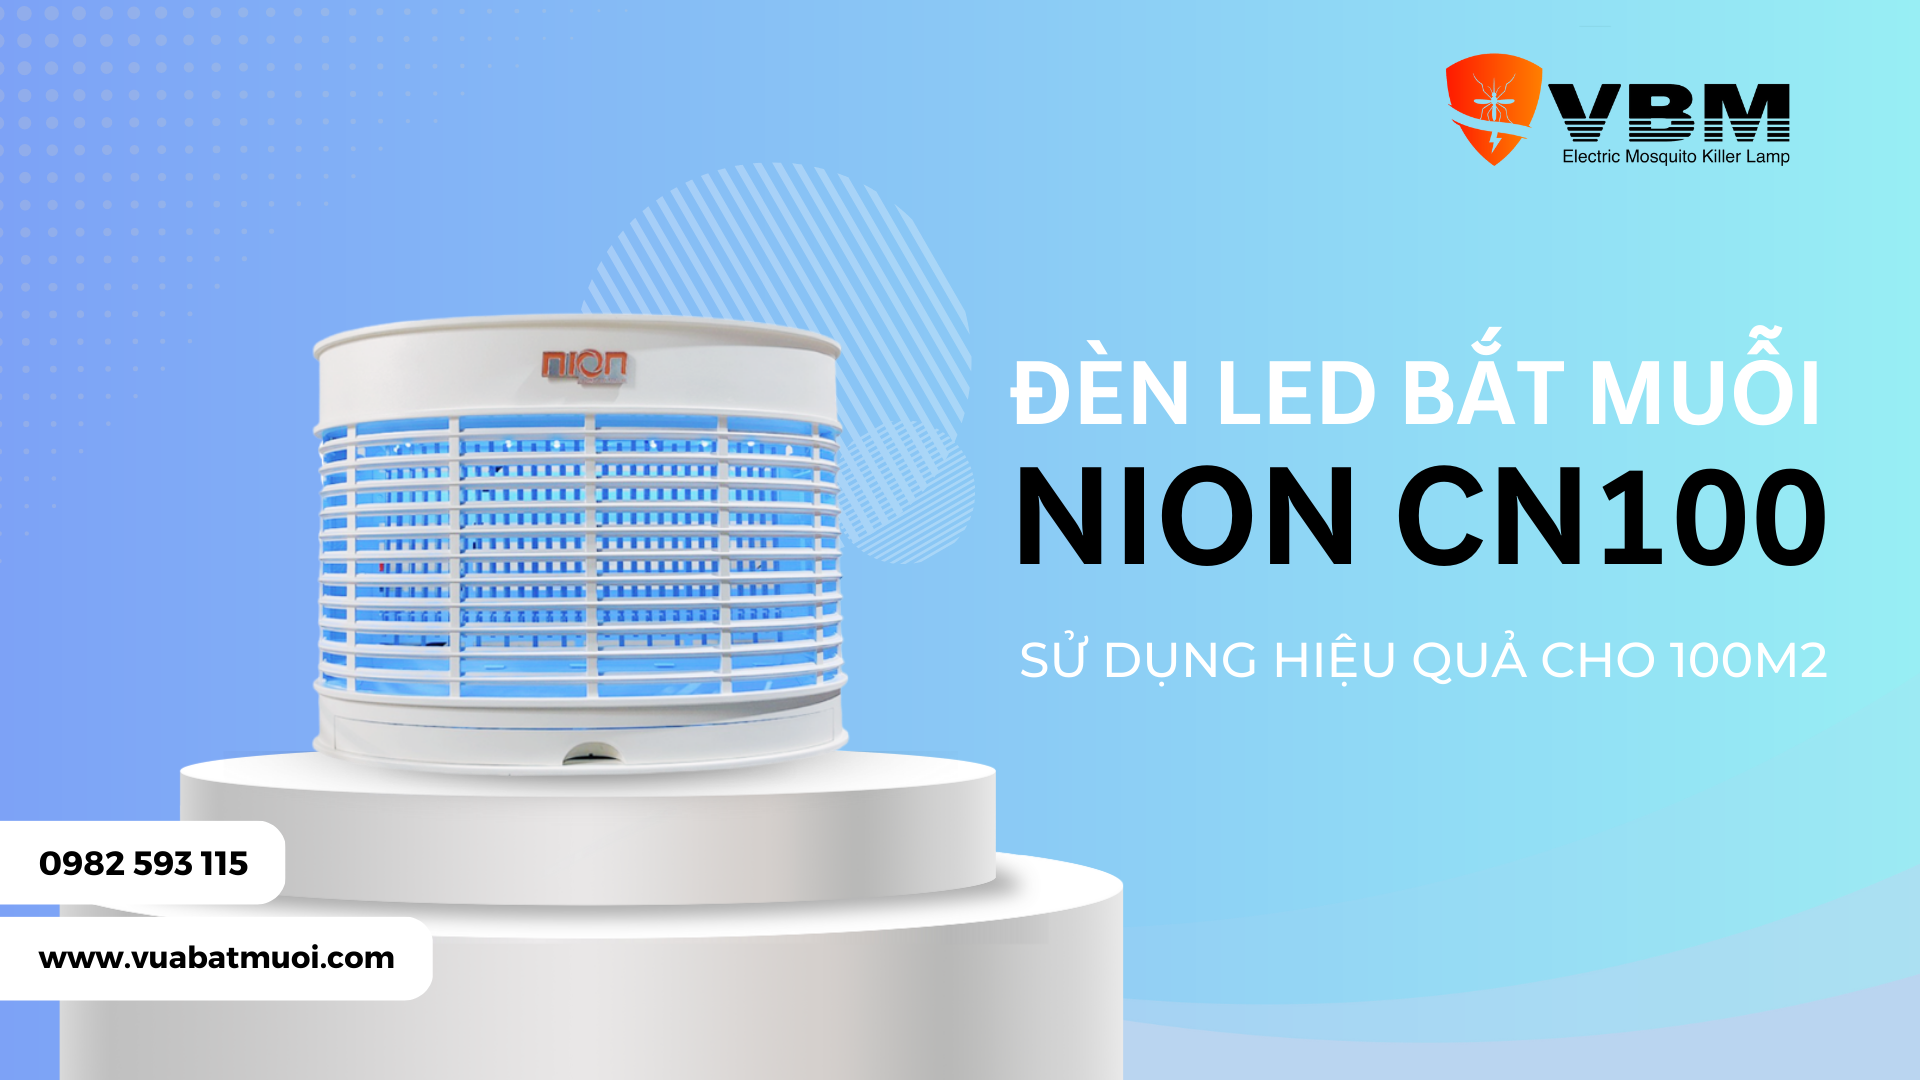 Đèn LED bắt muỗi và côn trùng Nion CN100: thông tin